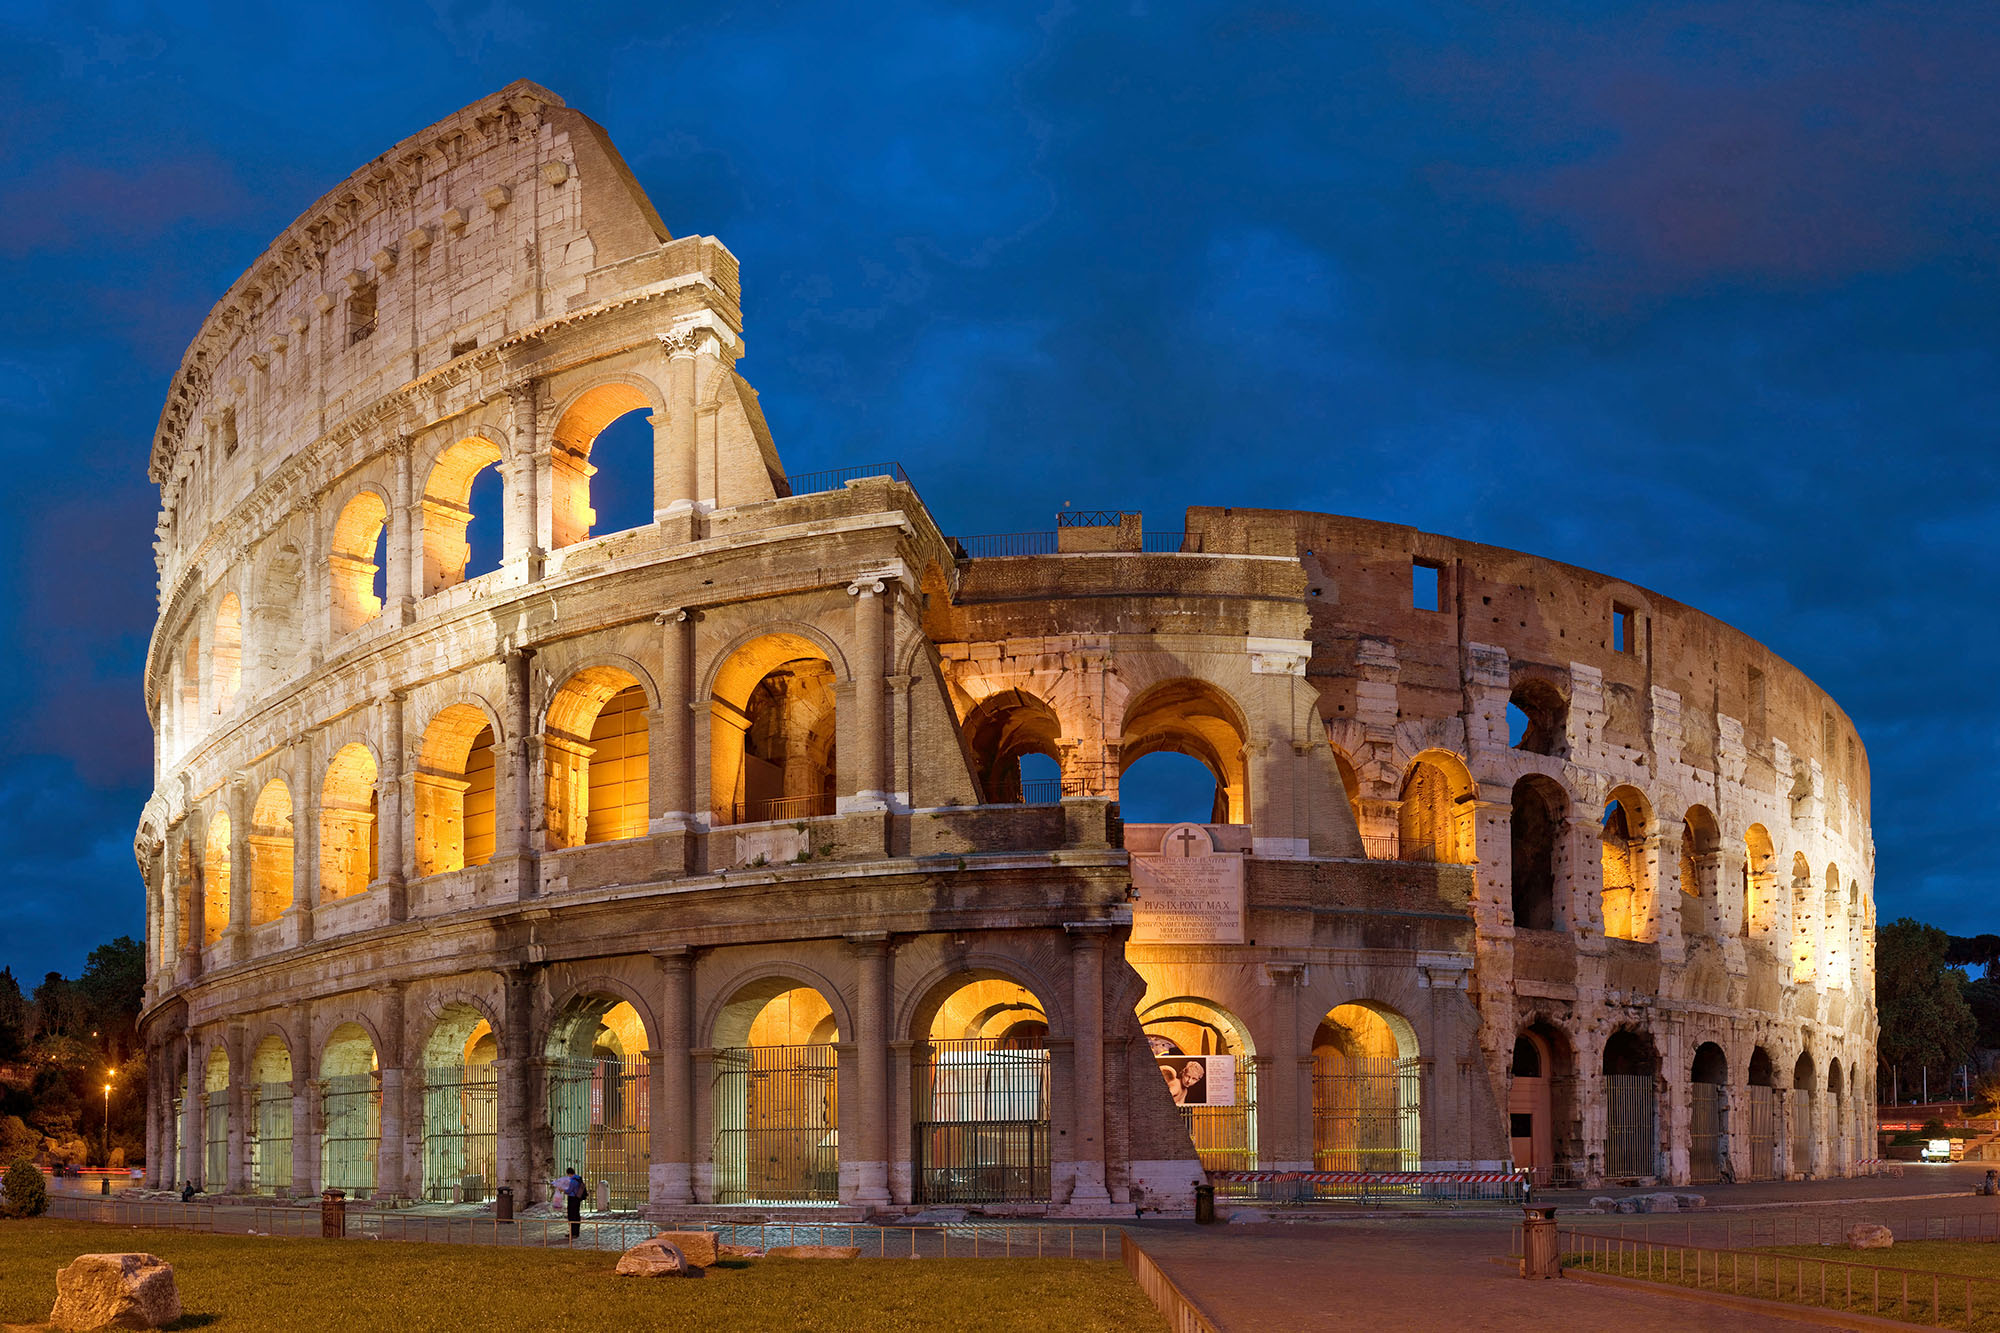 Colosseum in rome photo